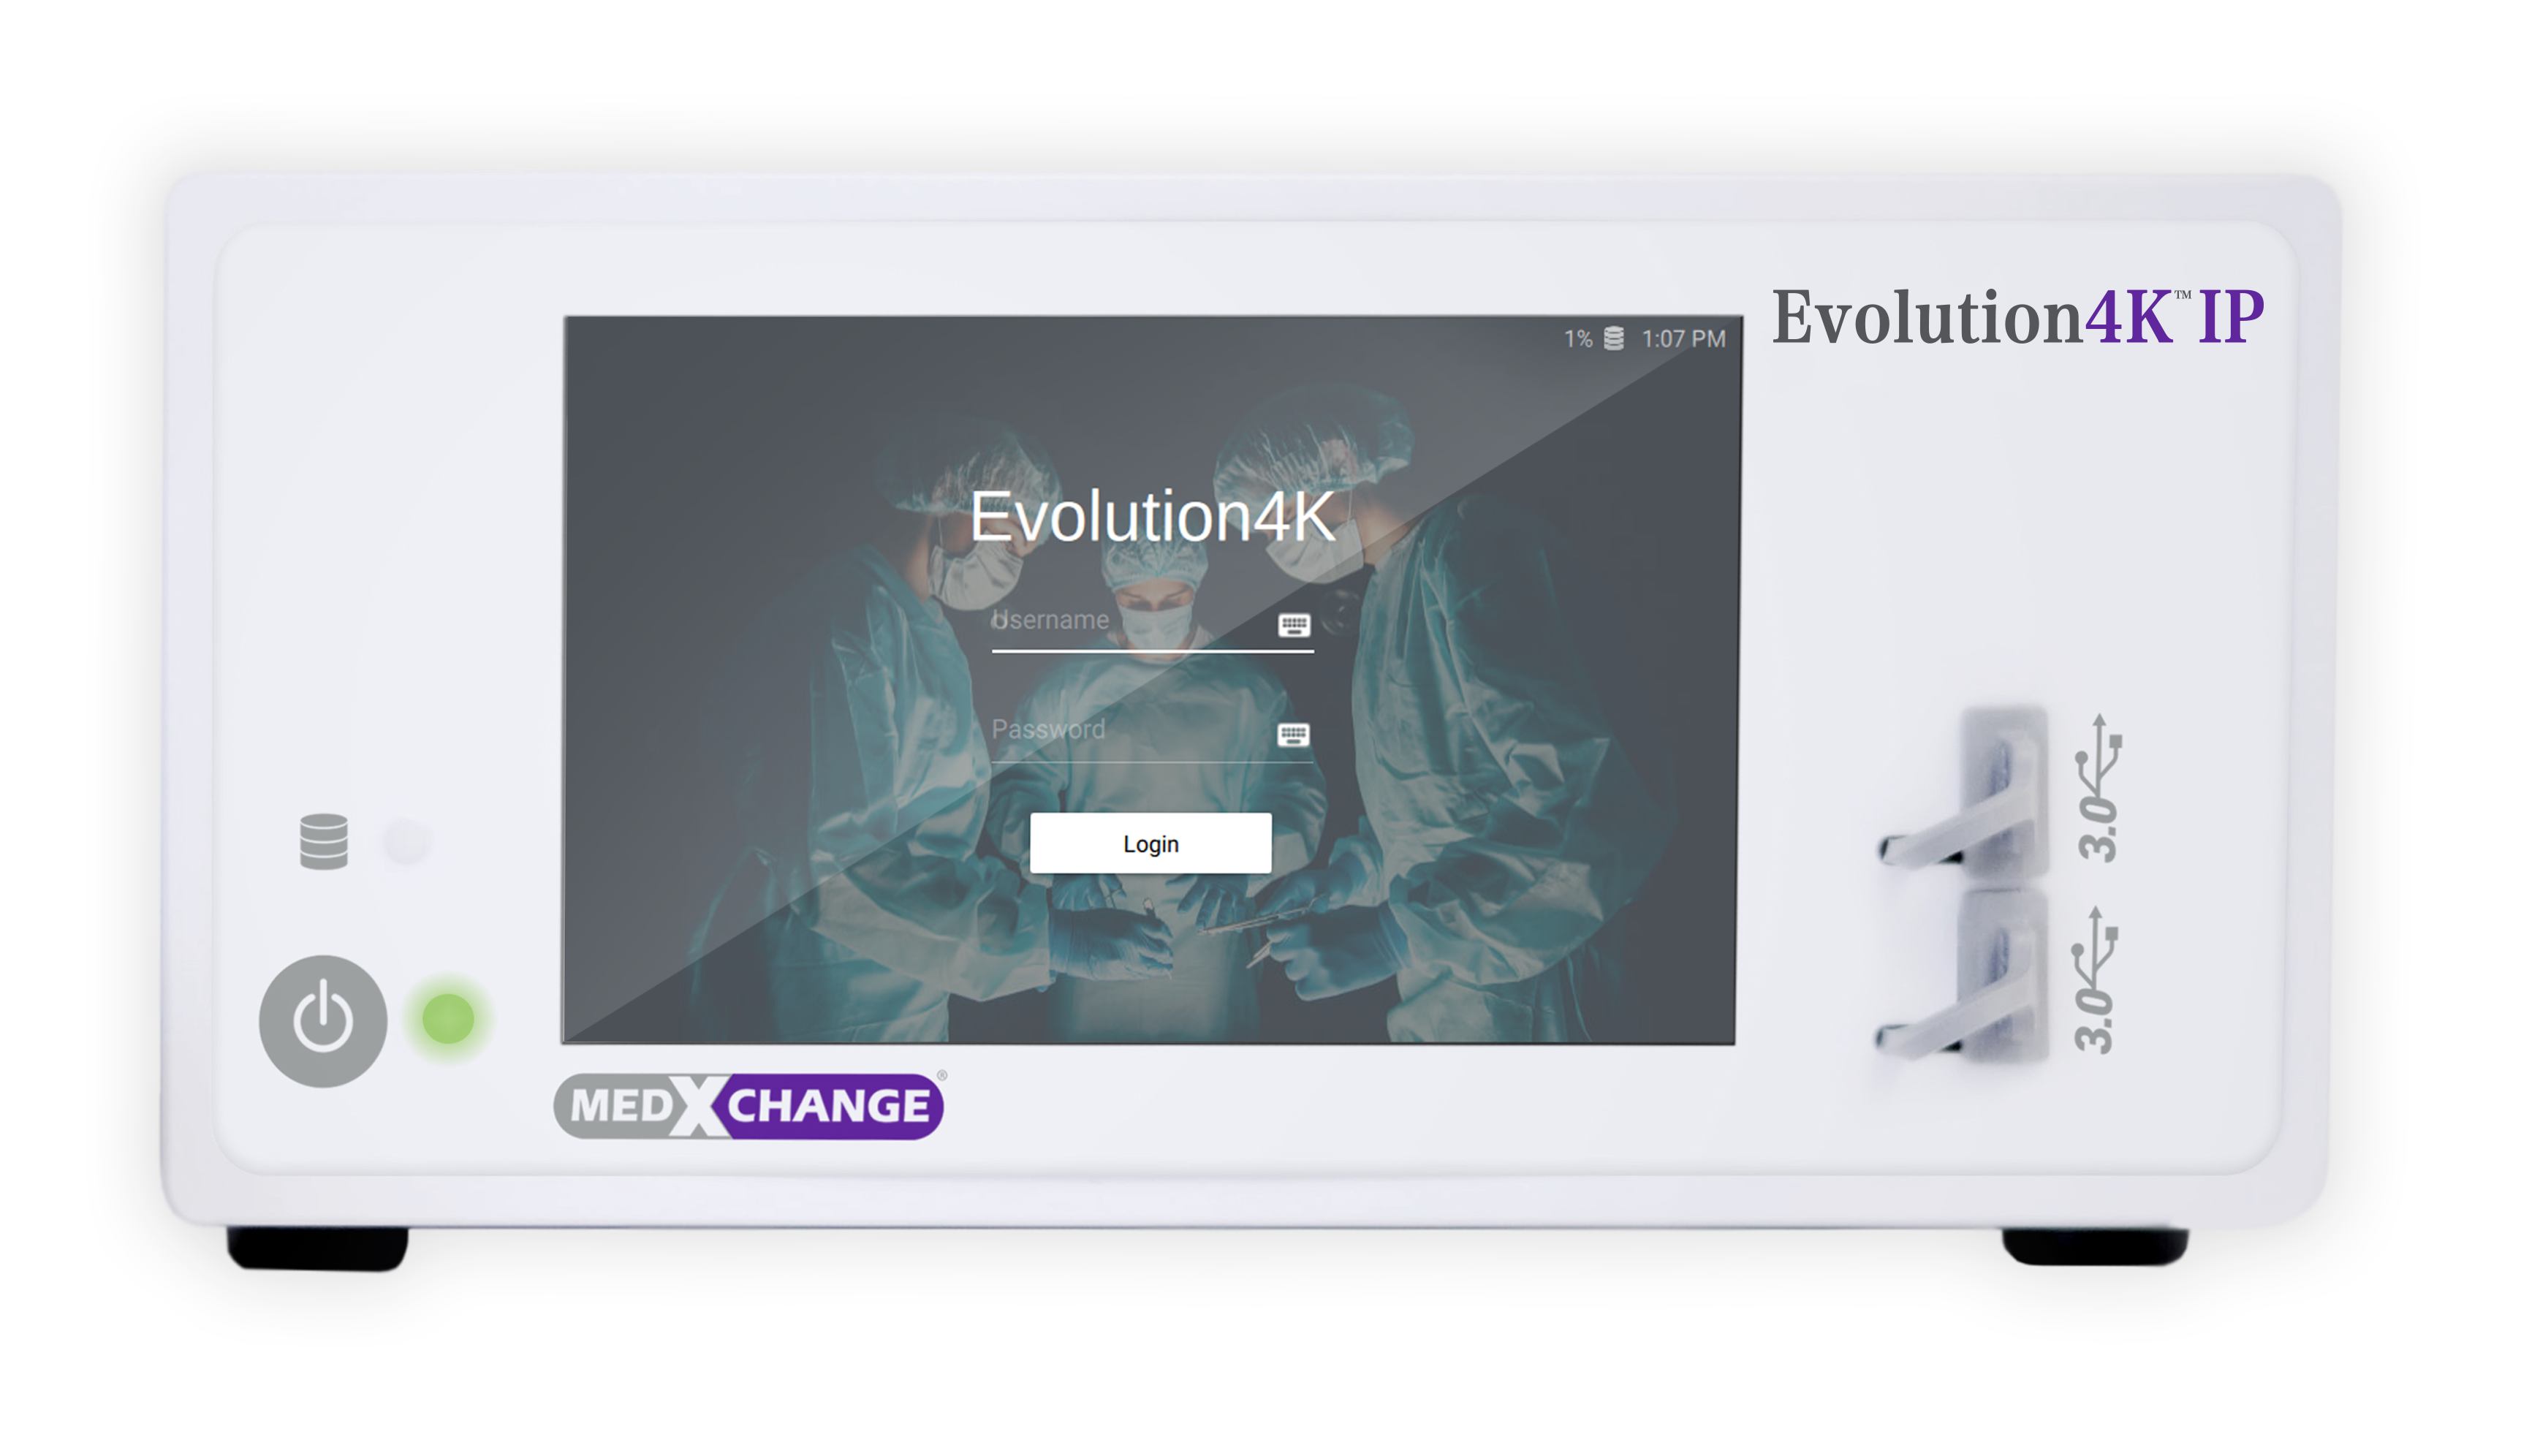 Evolution4K IP